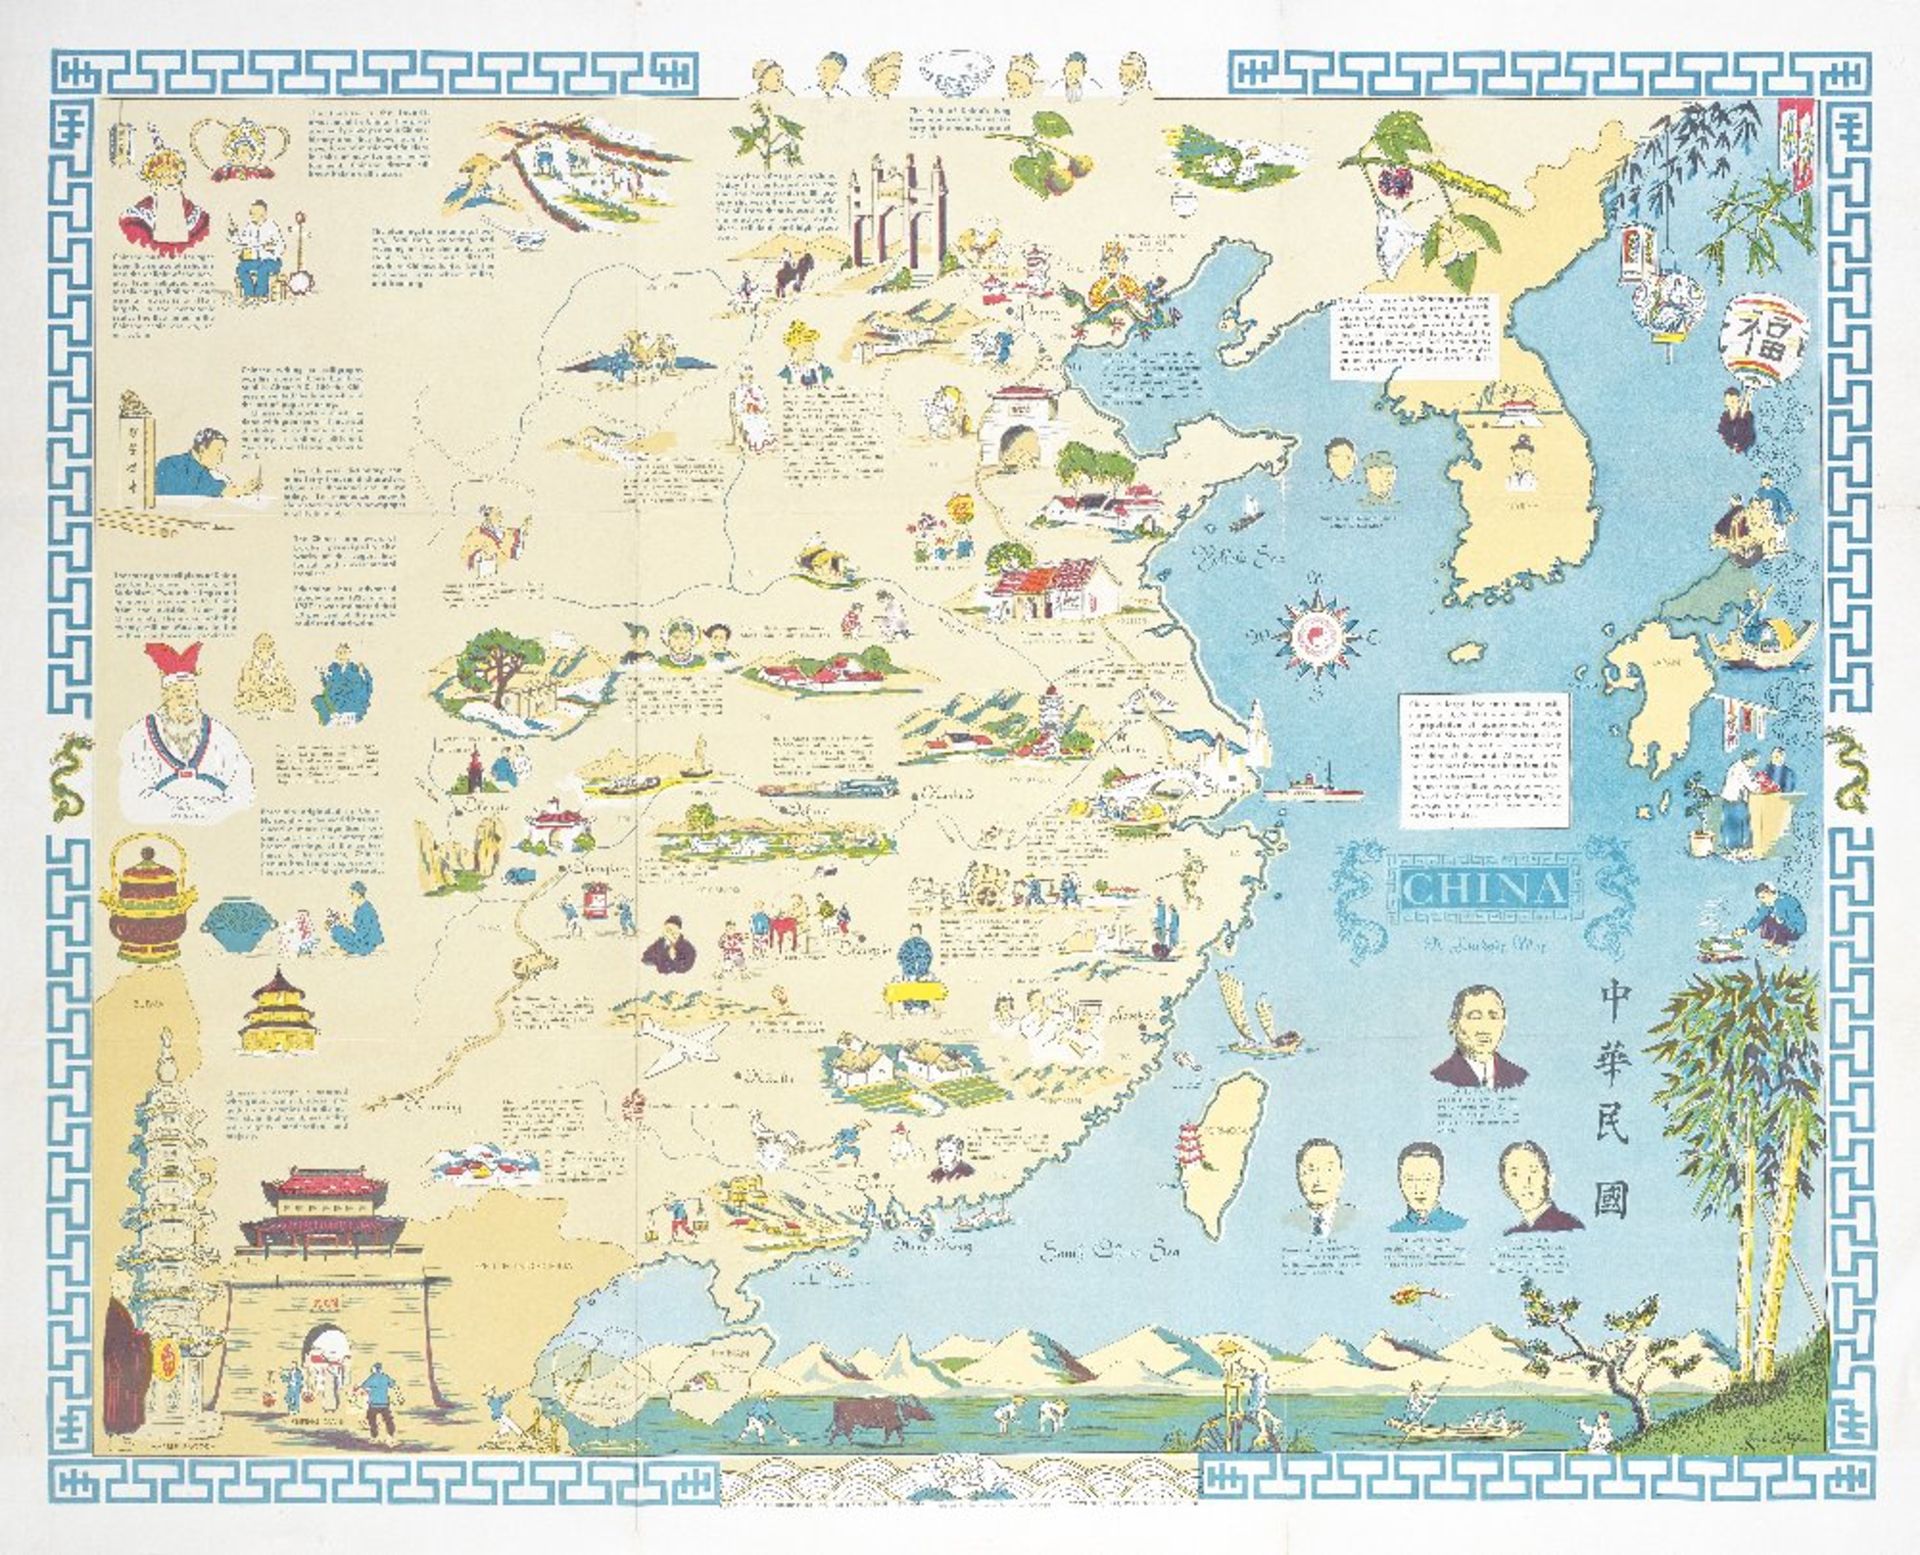 CHINA JEFFERSON (LOUISE E.) China. A Friendship Map, New York, Friendship Press, Inc., 1948